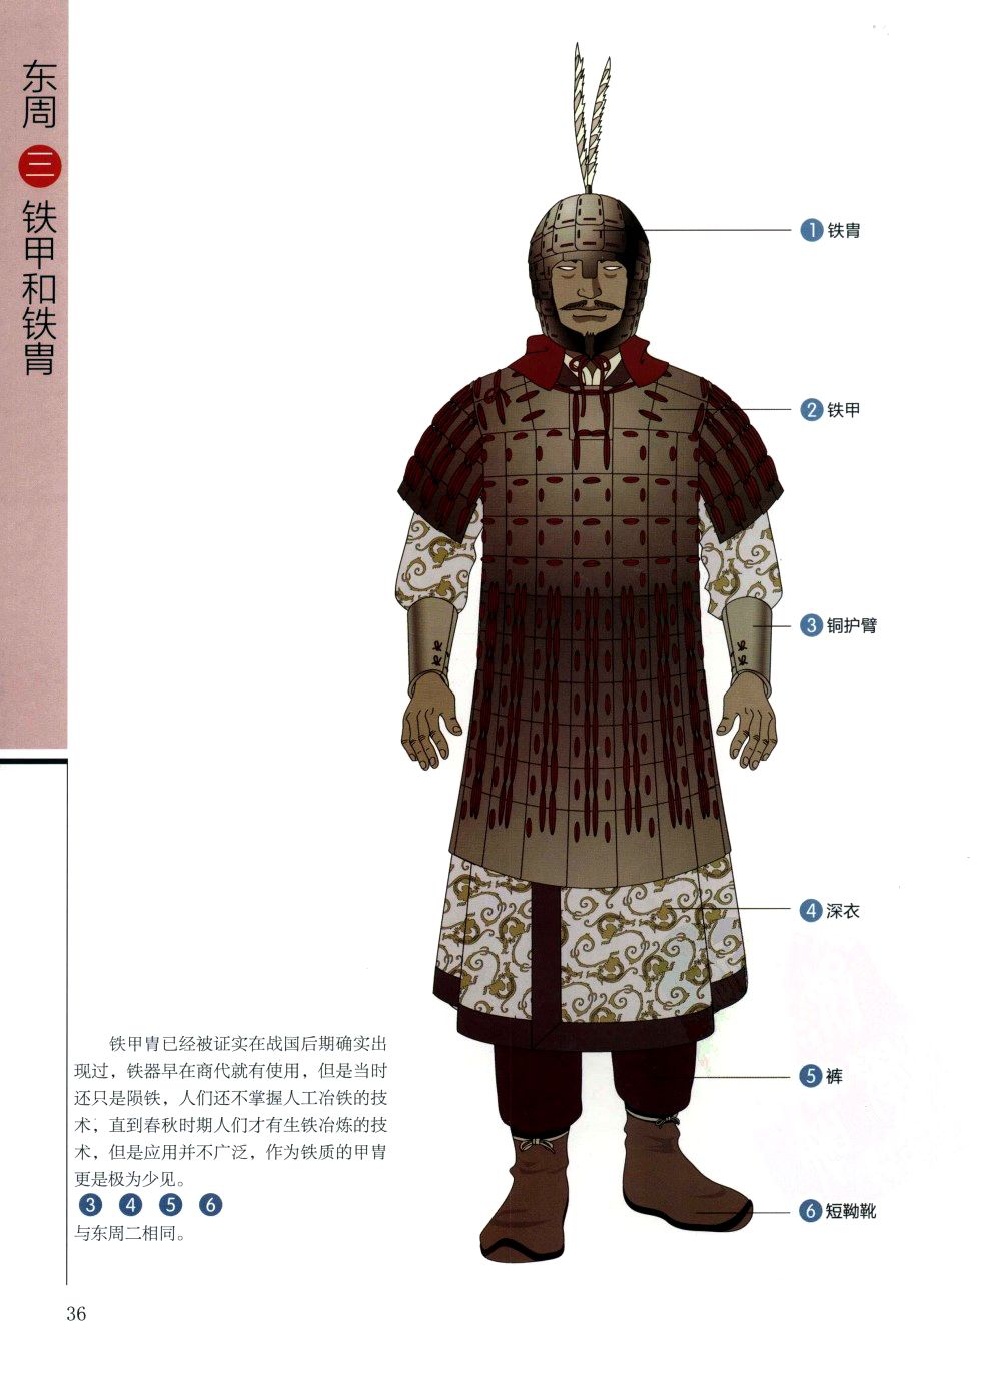 多图:画说中国古代历朝盔甲